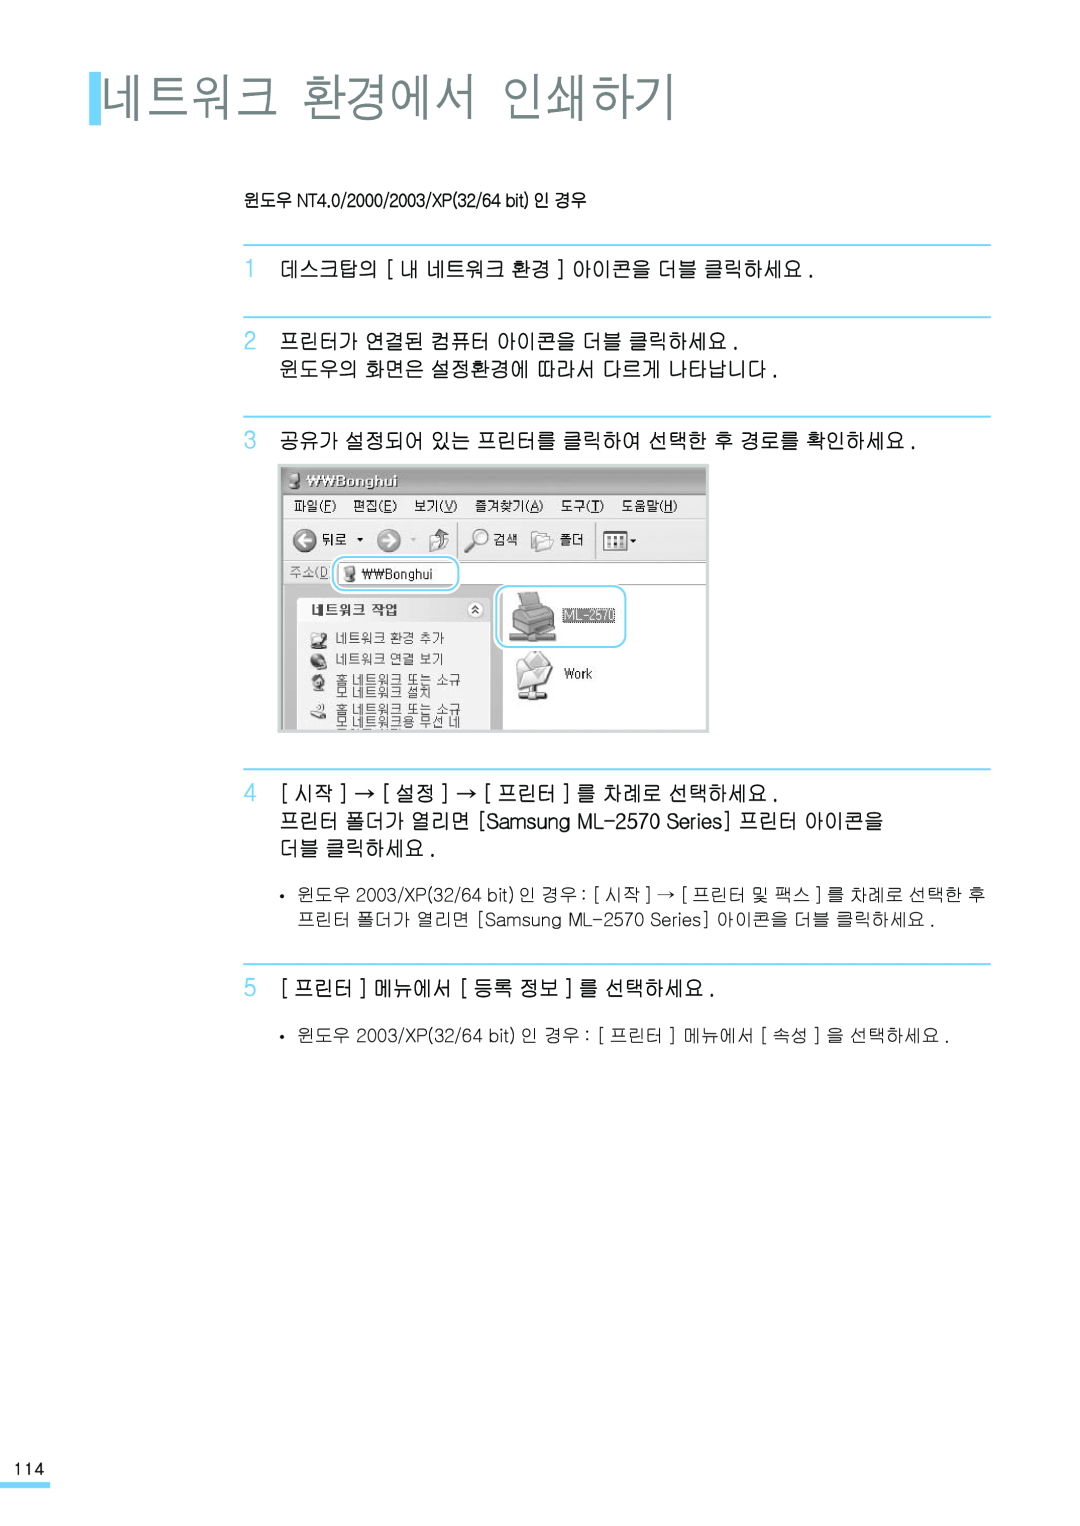 Samsung ML-2571N manual 네트워크 환경에서 인쇄하기, 1 데스크탑의 내 네트워크 환경 아이콘을 더블 클릭하세요, 3 공유가 설정되어 있는 프린터를 클릭하여 선택한 후 경로를 확인하세요 